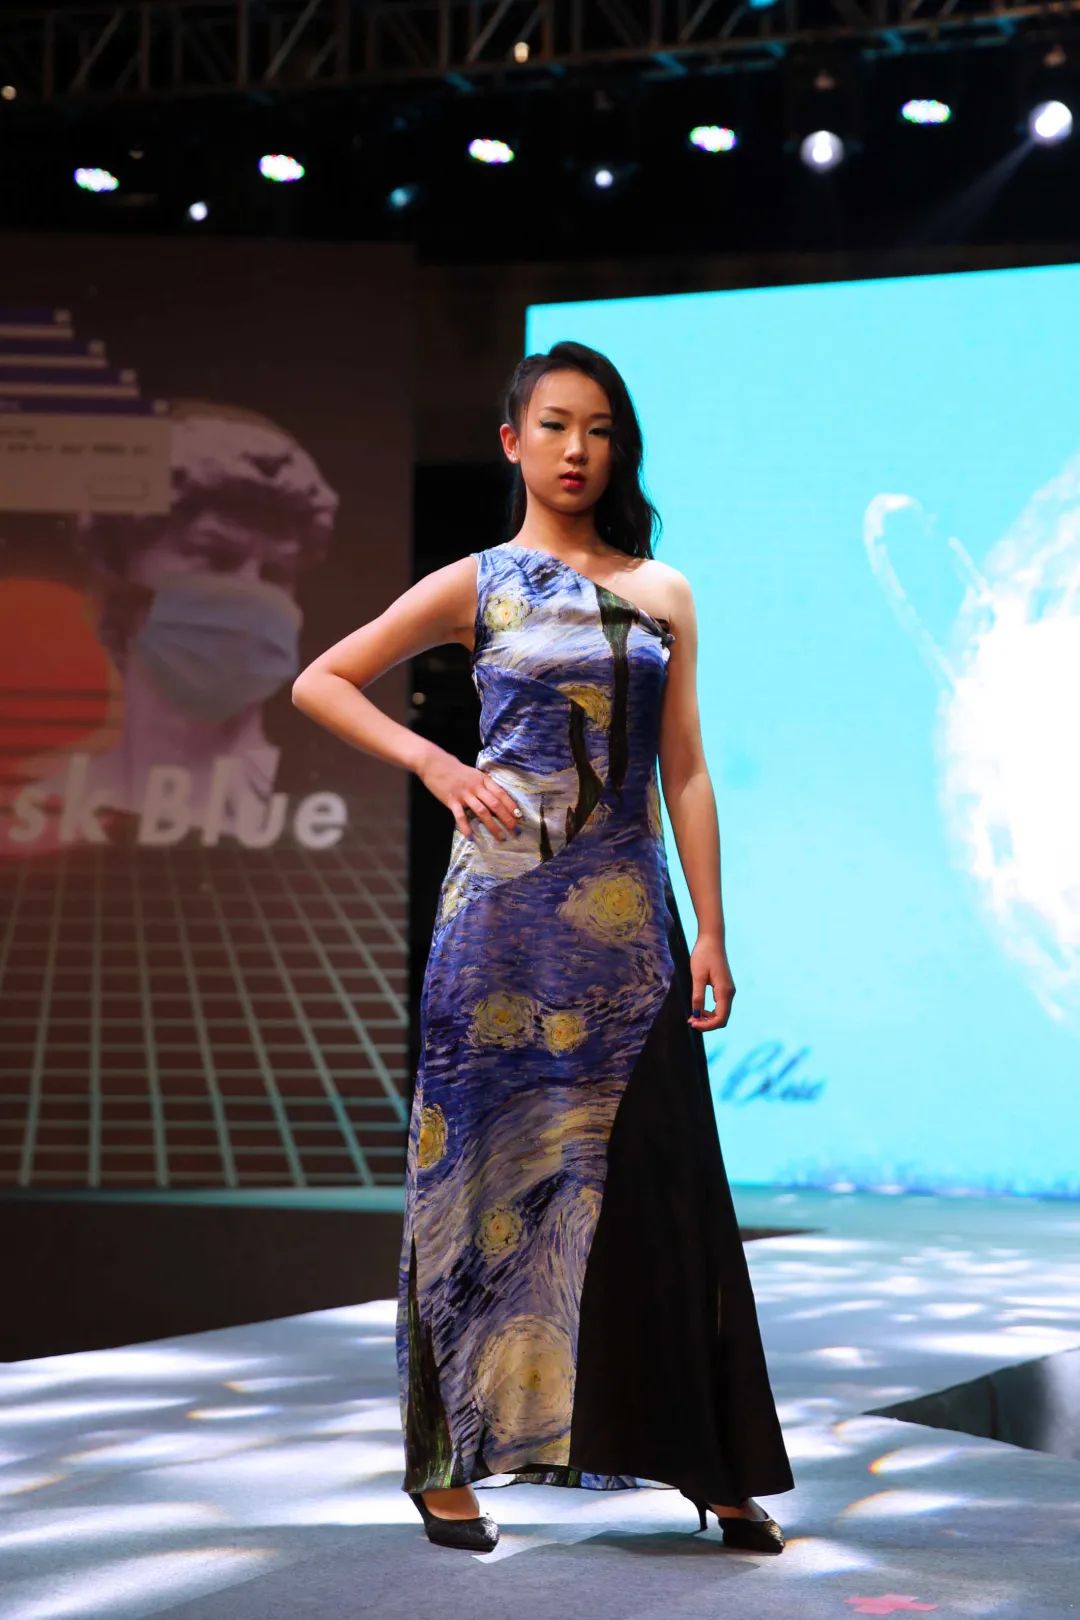 深国交2021 Fashion Show - 校园活动|疫情之下的时尚  深国交 深圳国际交流学院 第25张